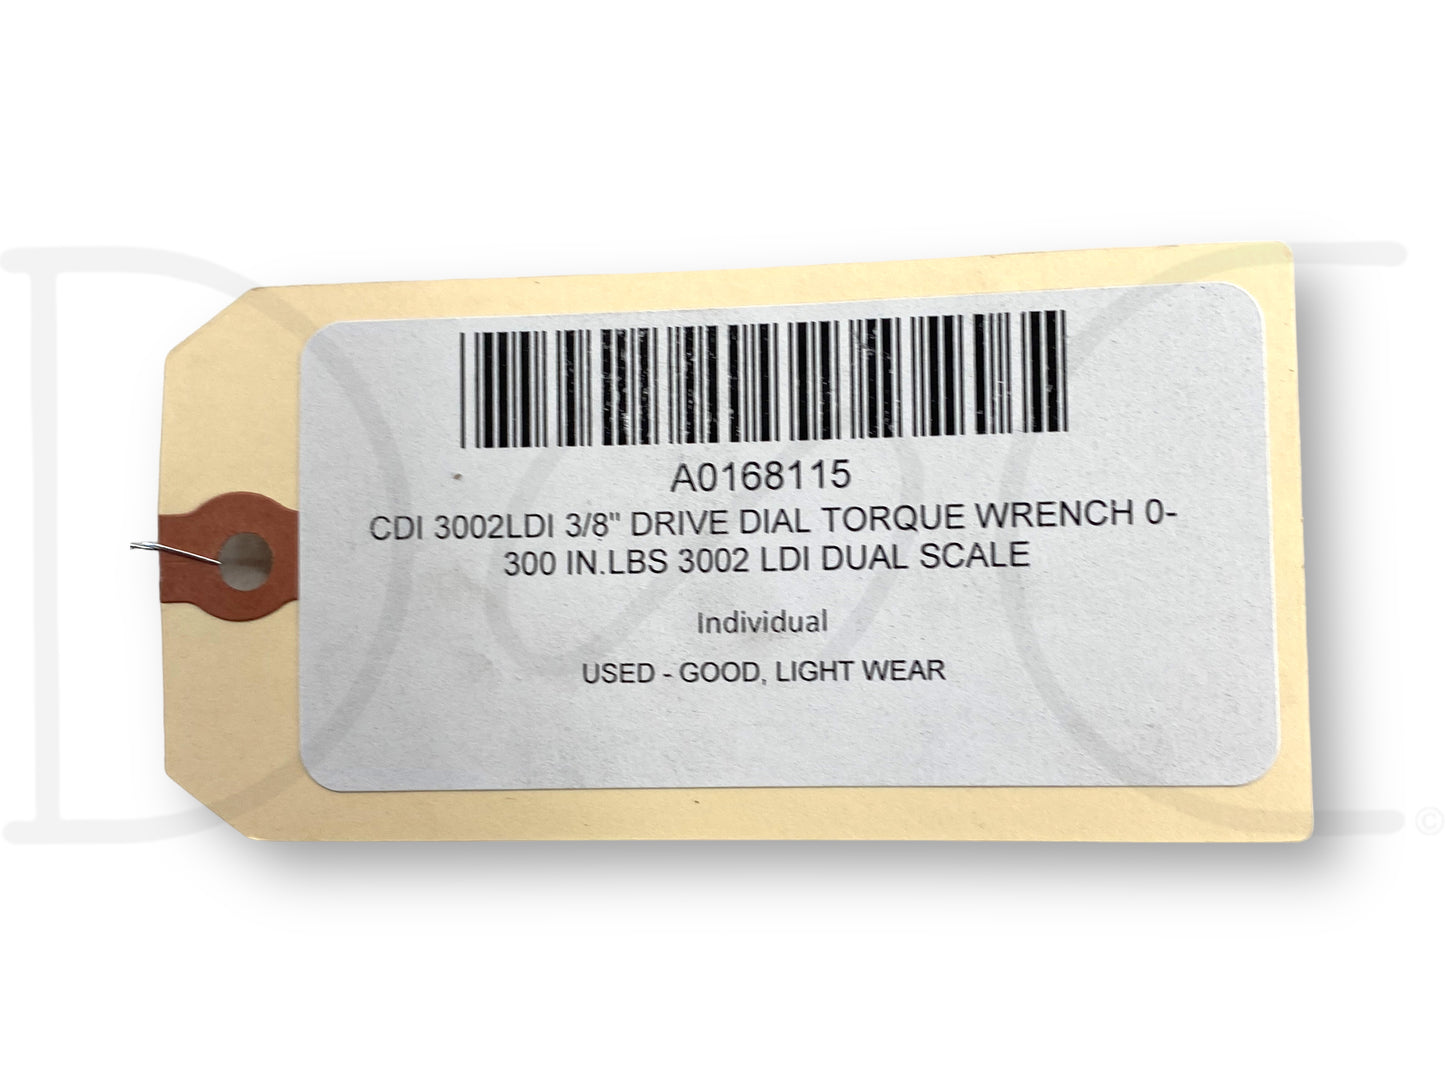 CDi 3002Ldi 3/8" Drive Dial Torque Wrench 0-300 In.Lbs 3002 Ldi Dual Scale